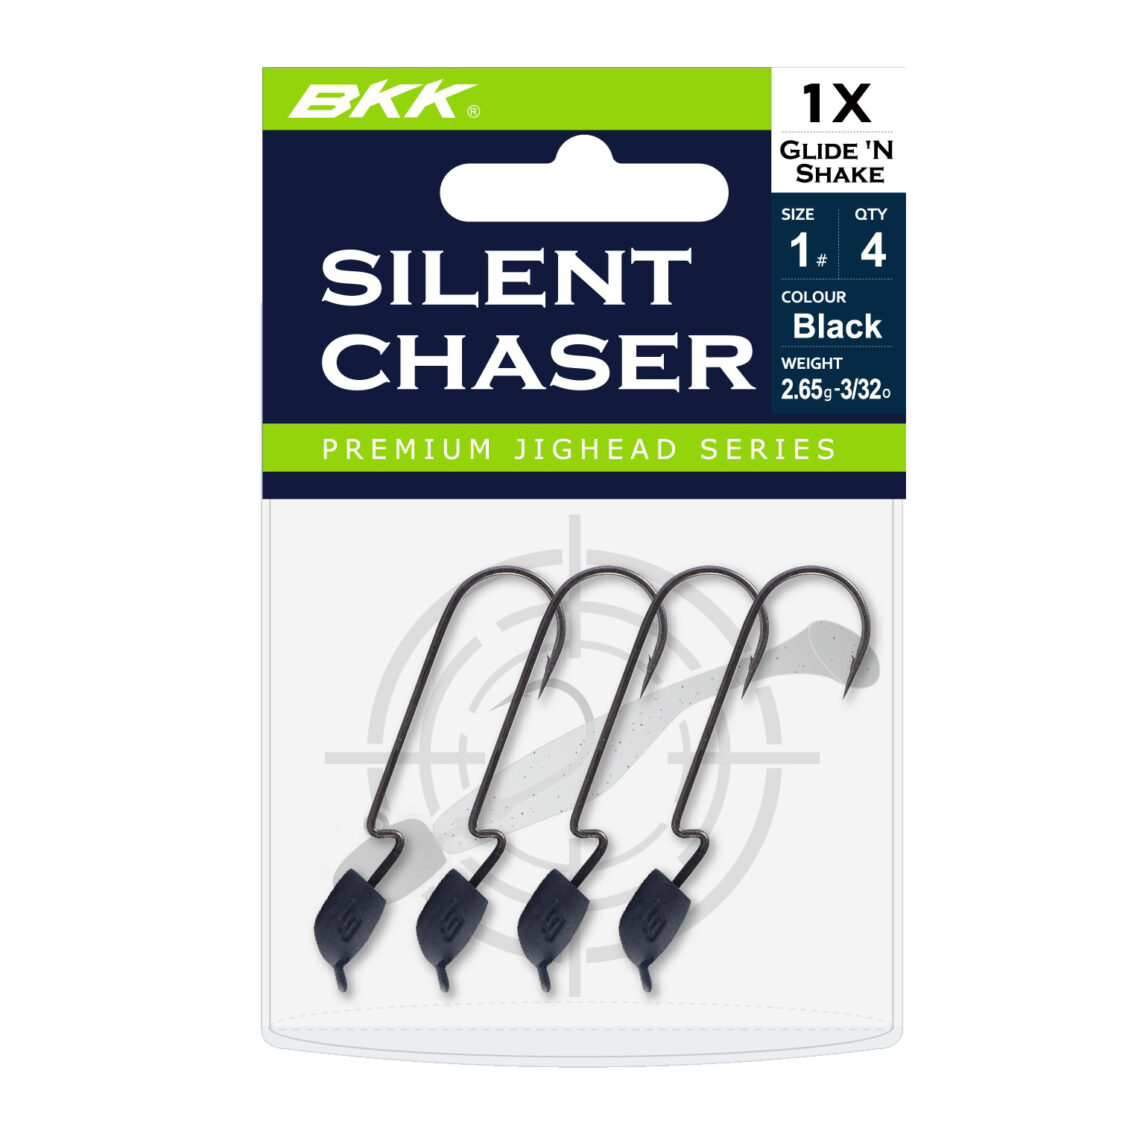 BKK Silent Chaser – Glide ‘N Shake Jighaken